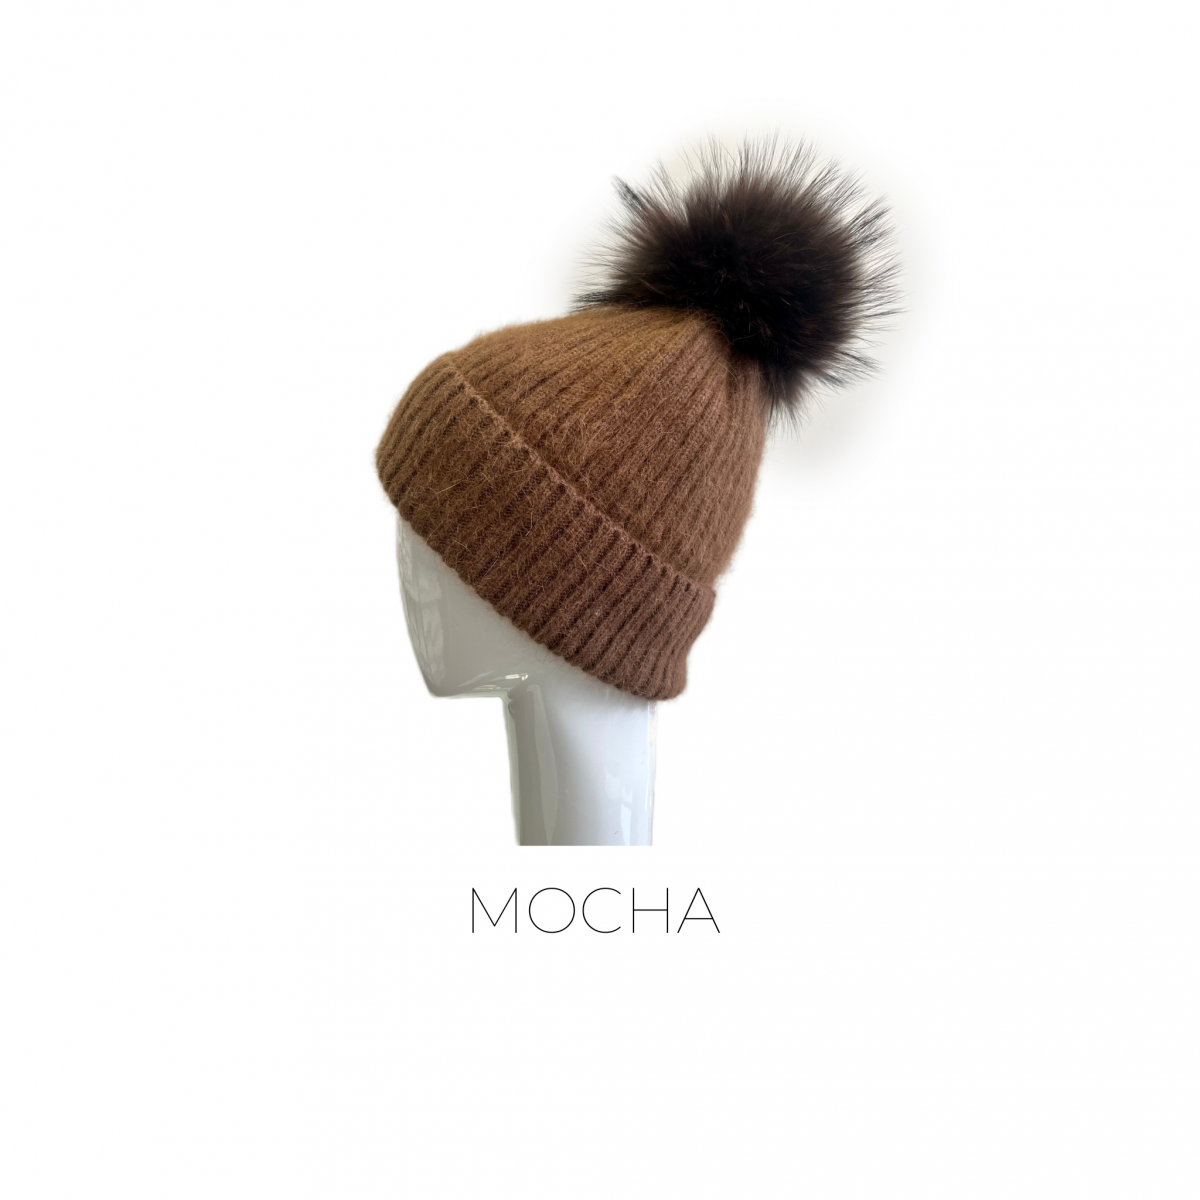 Angora/Wool Blend Hat in Mocha